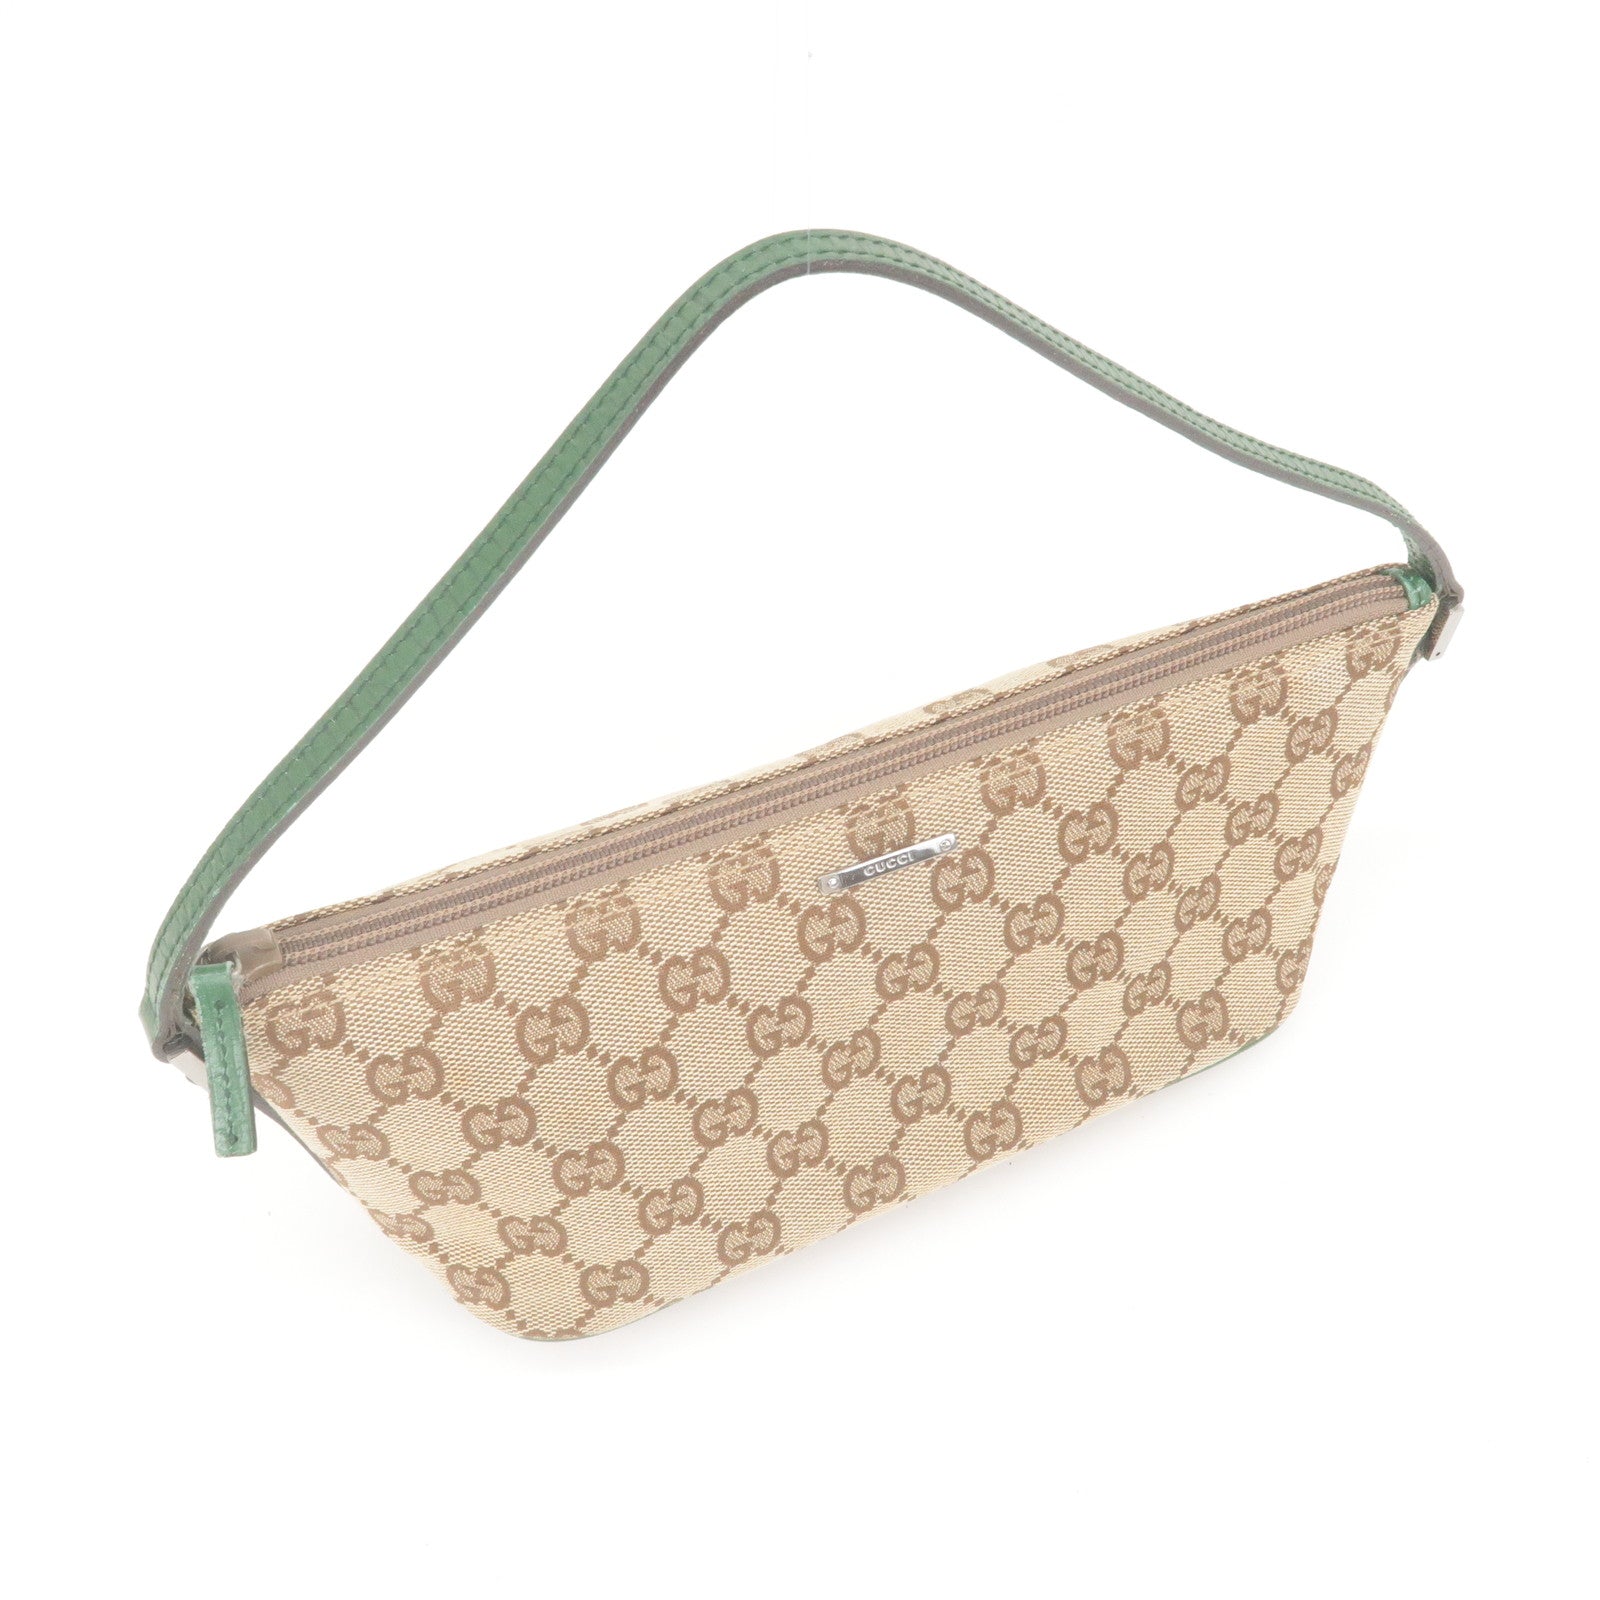 Gucci GG Canvas Boat Pochette - Brown Mini Bags, Handbags